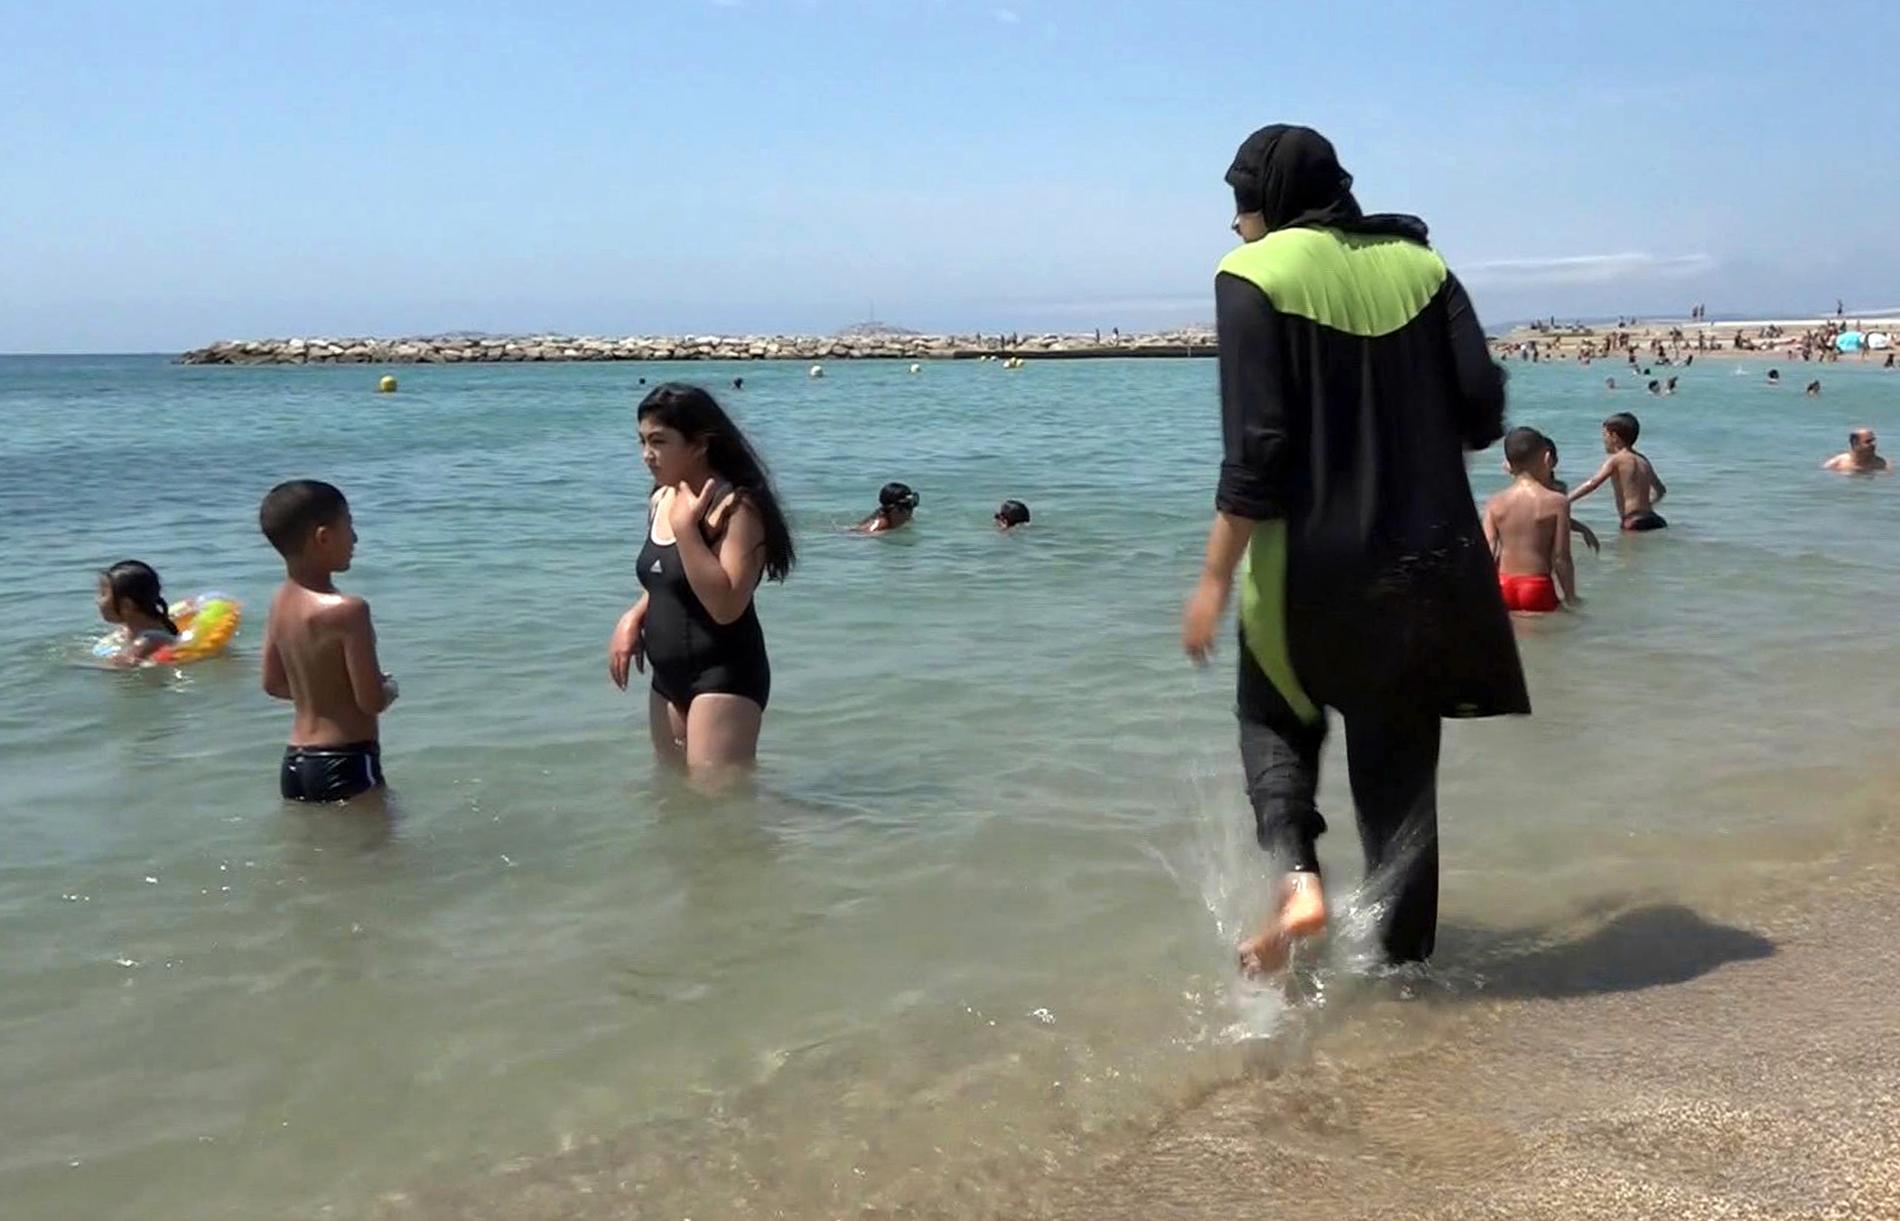 En kvinna på stranden i Marseille som bär burkini, ett badplagg som täcker både huvud och kropp. Arkivbild.